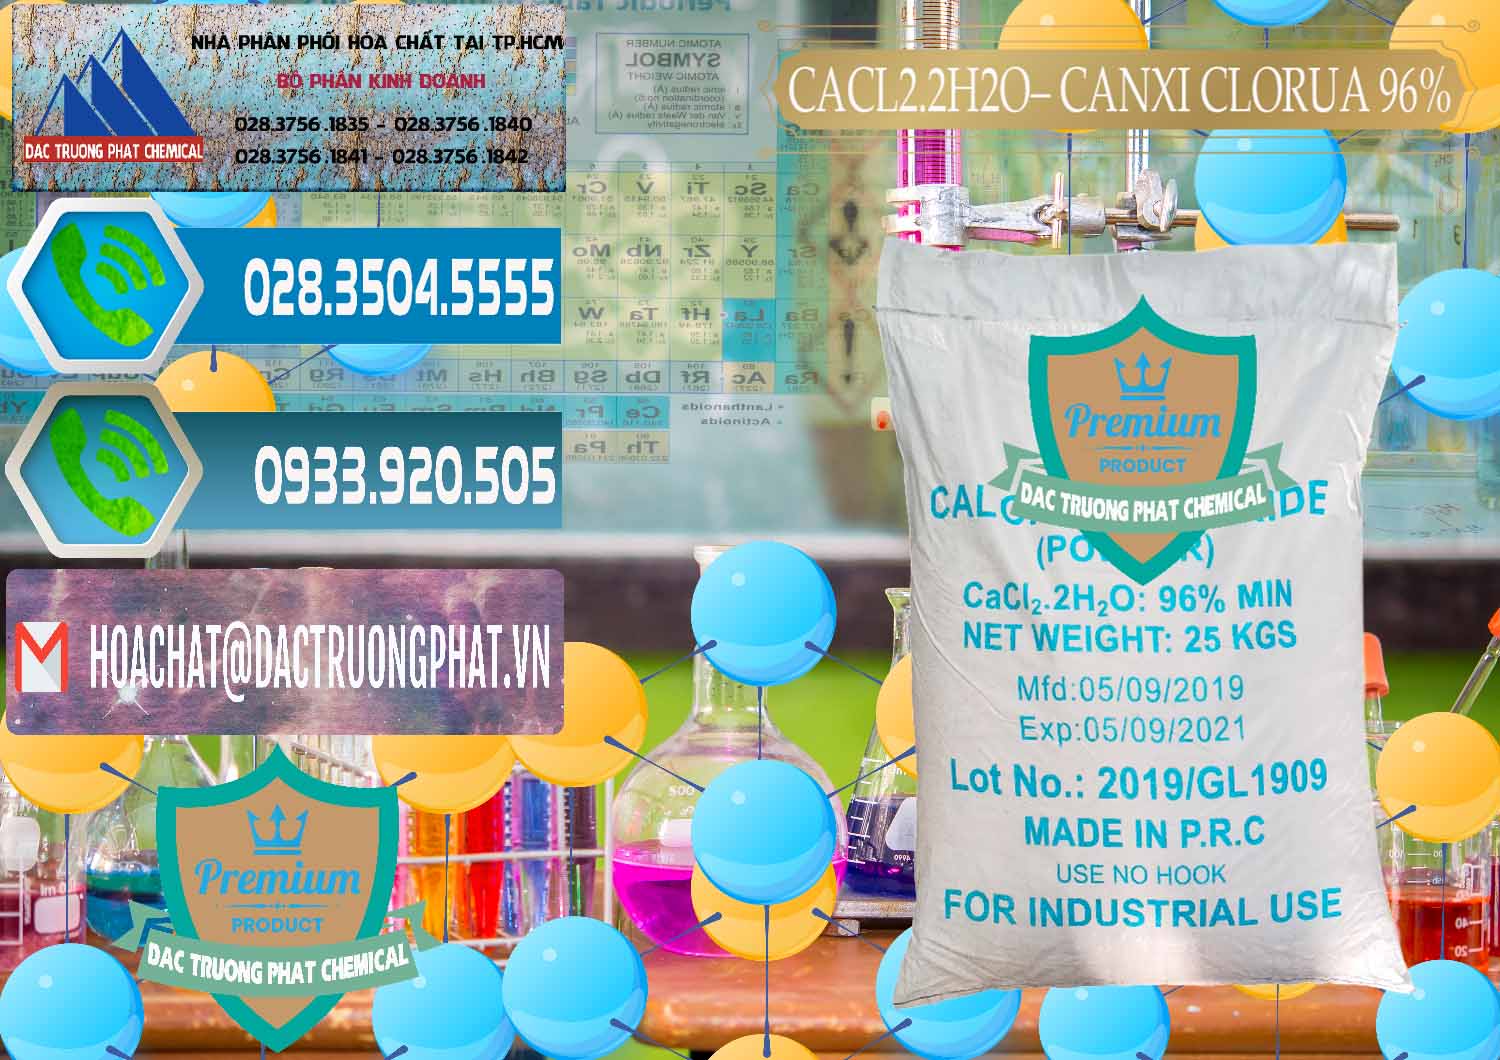 Cung ứng & bán CaCl2 – Canxi Clorua 96% Logo Kim Cương Trung Quốc China - 0040 - Công ty chuyên phân phối và bán hóa chất tại TP.HCM - congtyhoachat.net